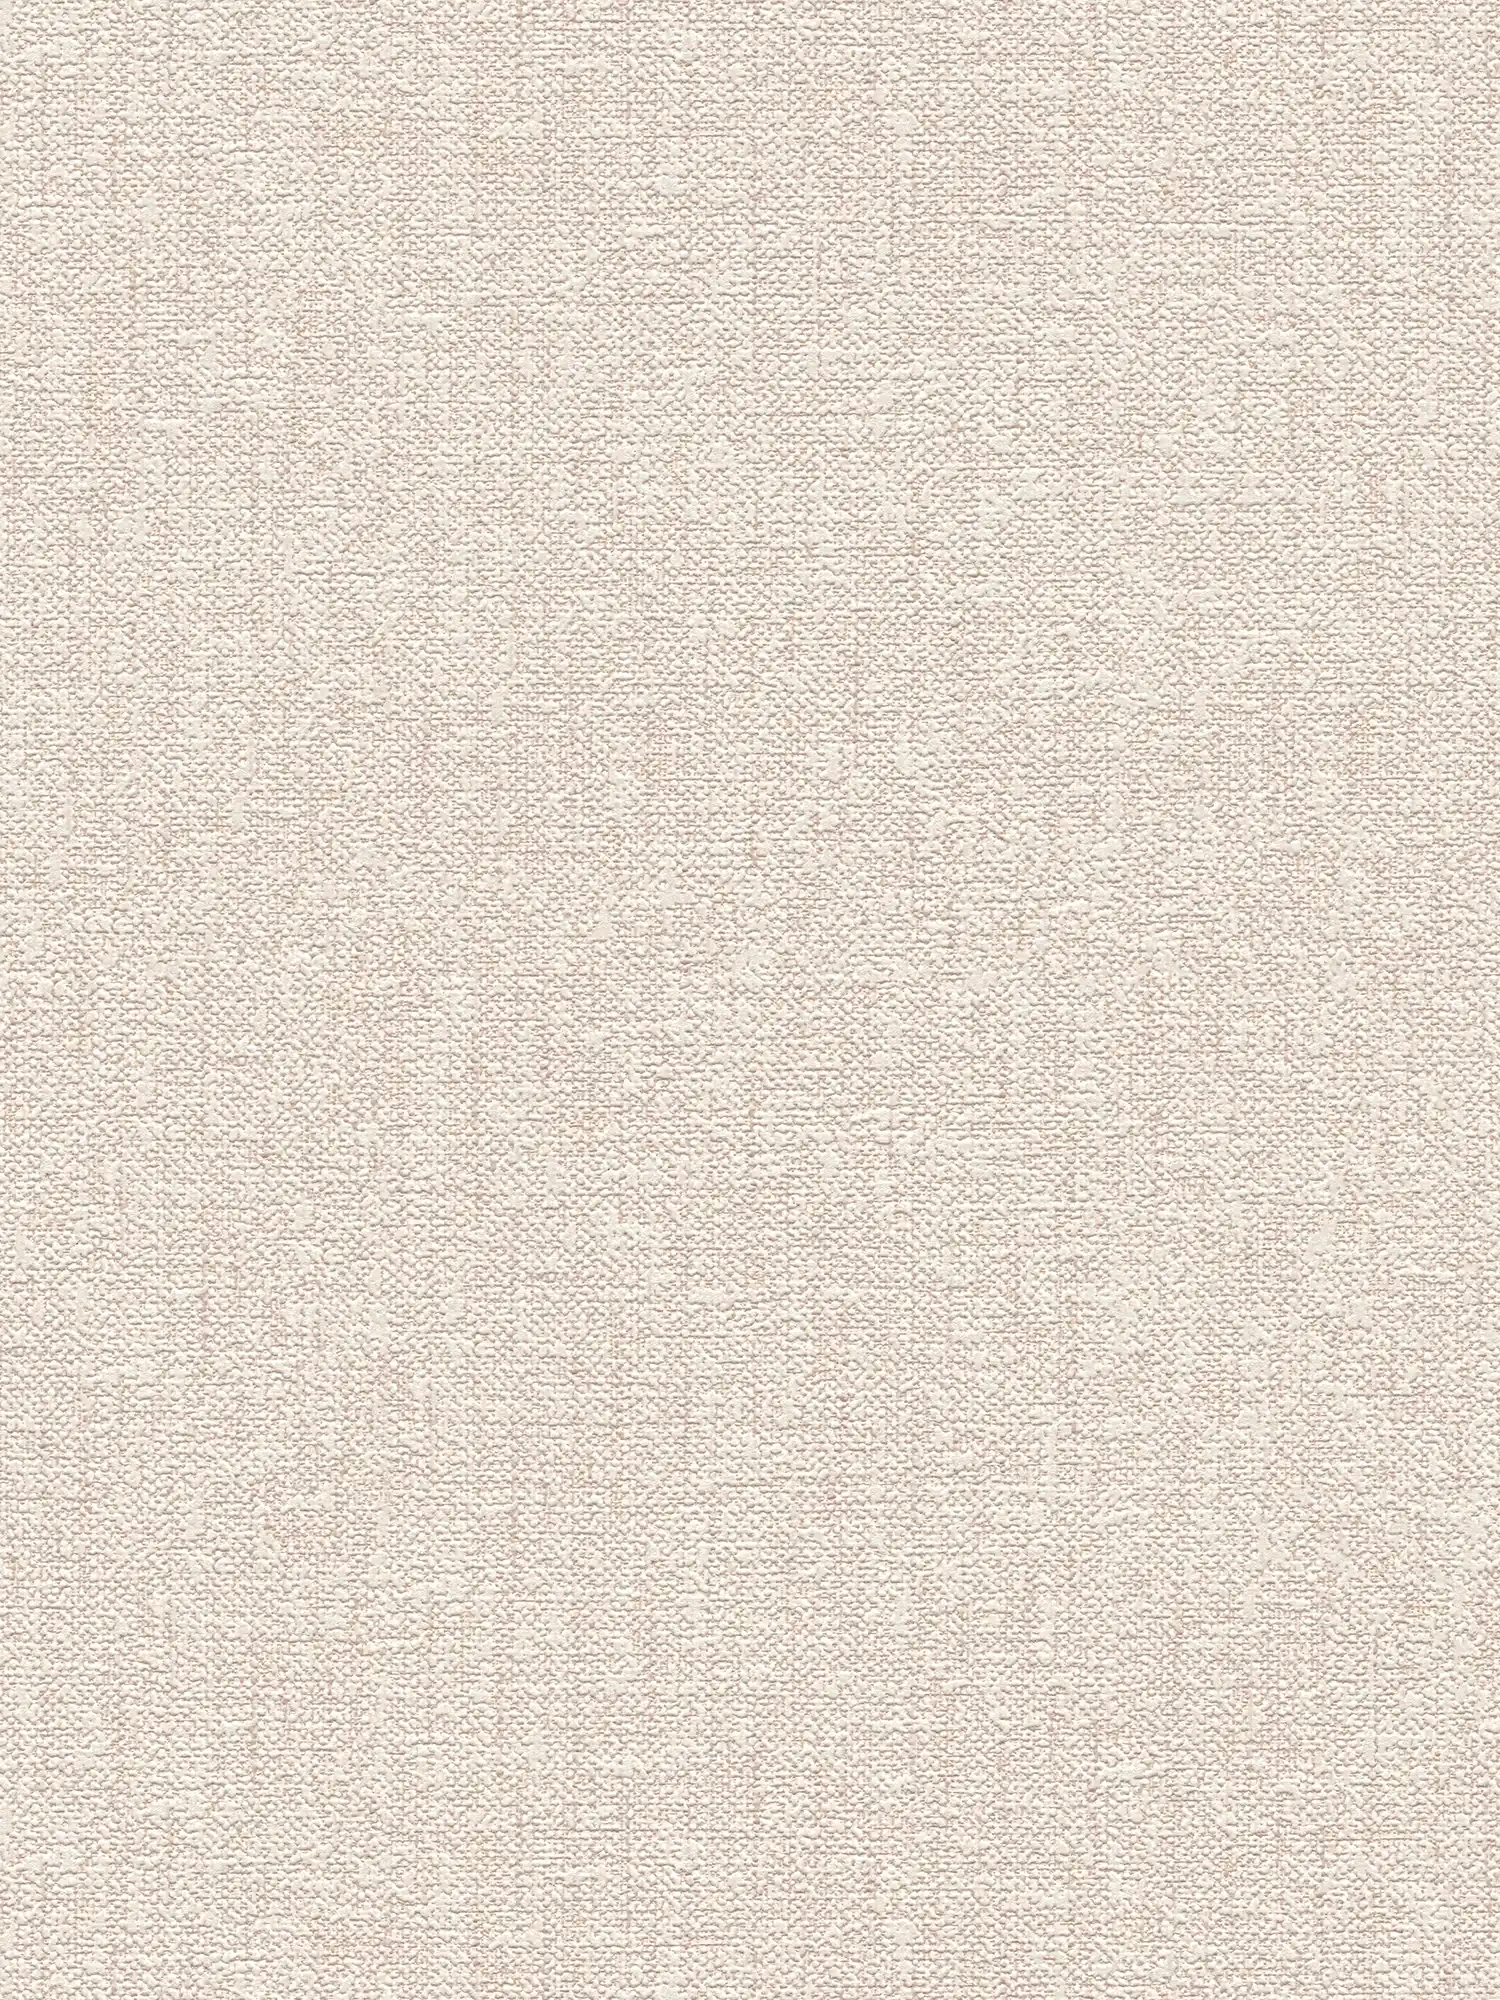 Papier peint avec structure textile imitation lin - marron
